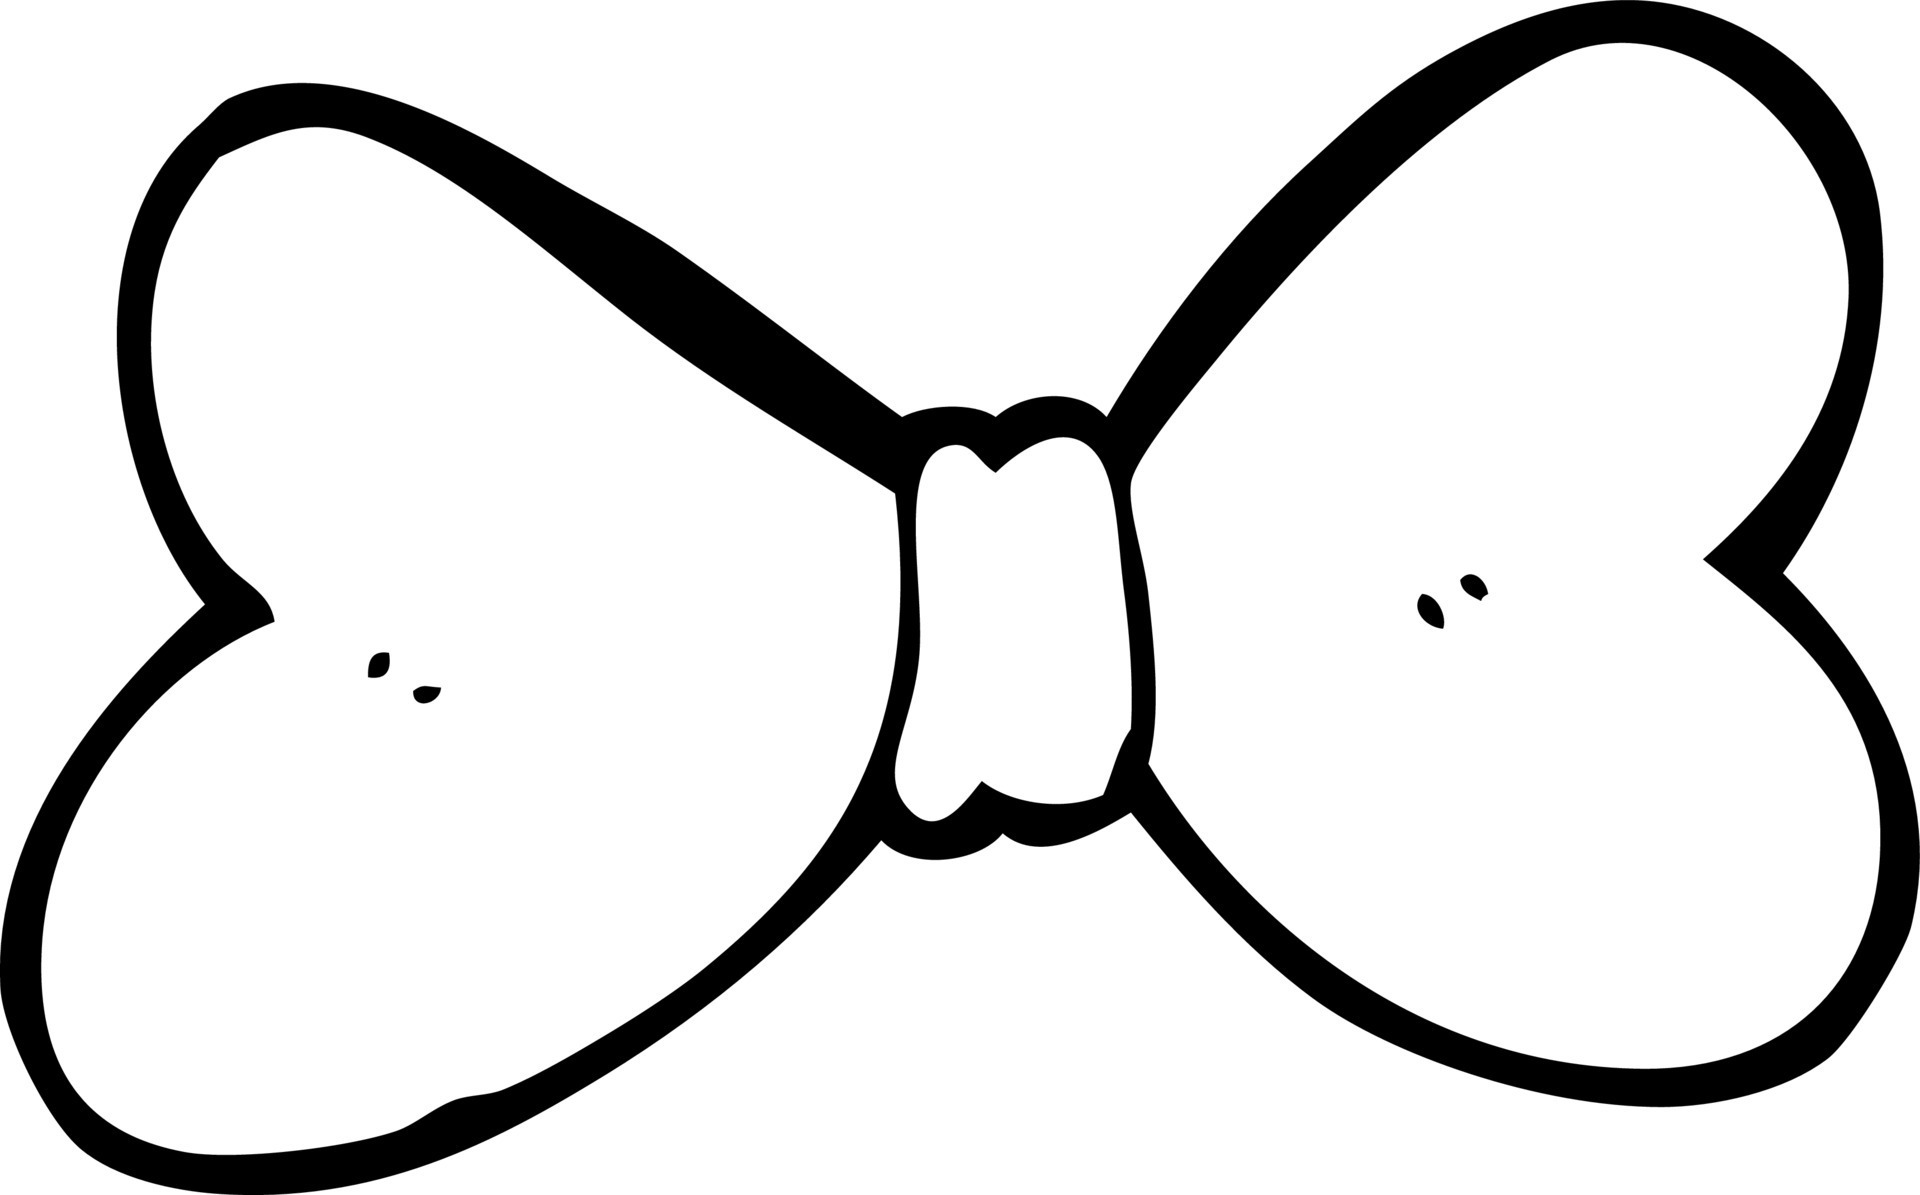 Jogo de vetores de borboleta de desenho animado grátis 93412 Vetor no  Vecteezy